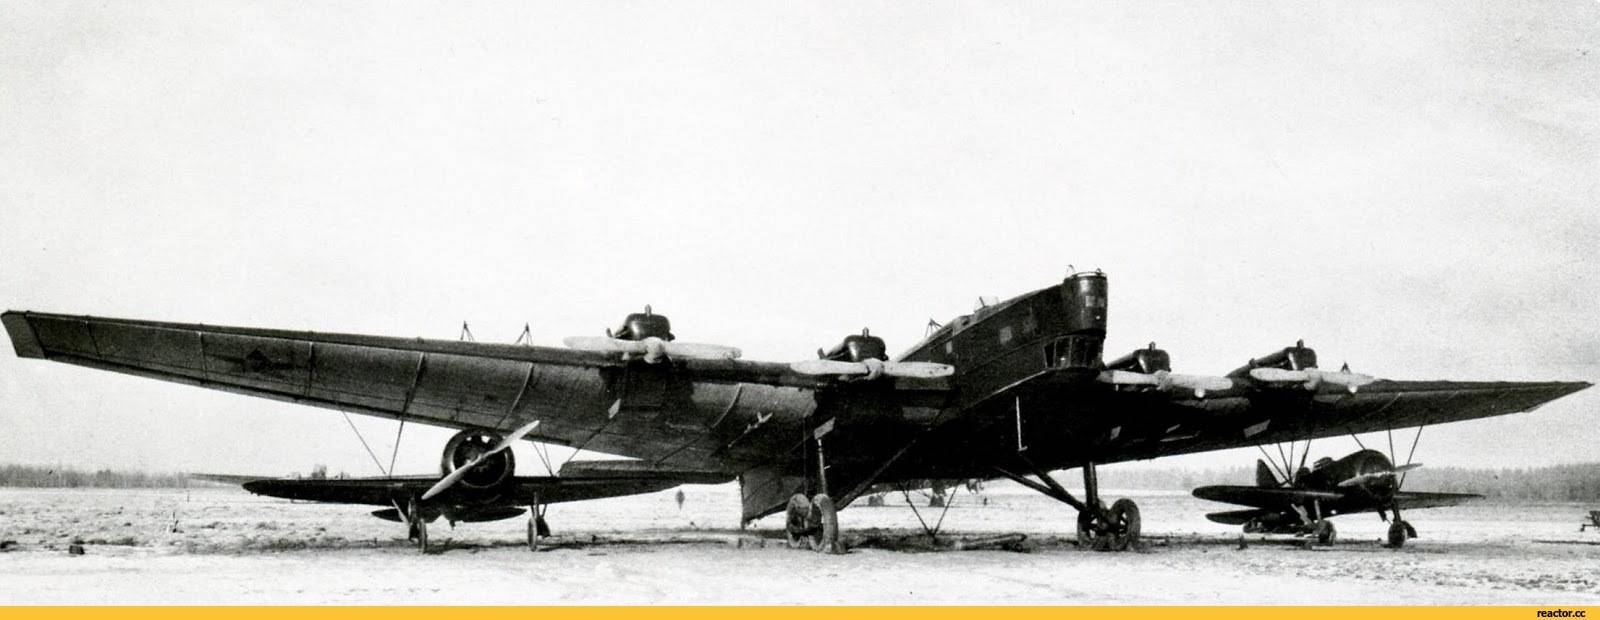 Военные историки намерены восстановить самолет тб-3, упавший в арктике в 1942 году